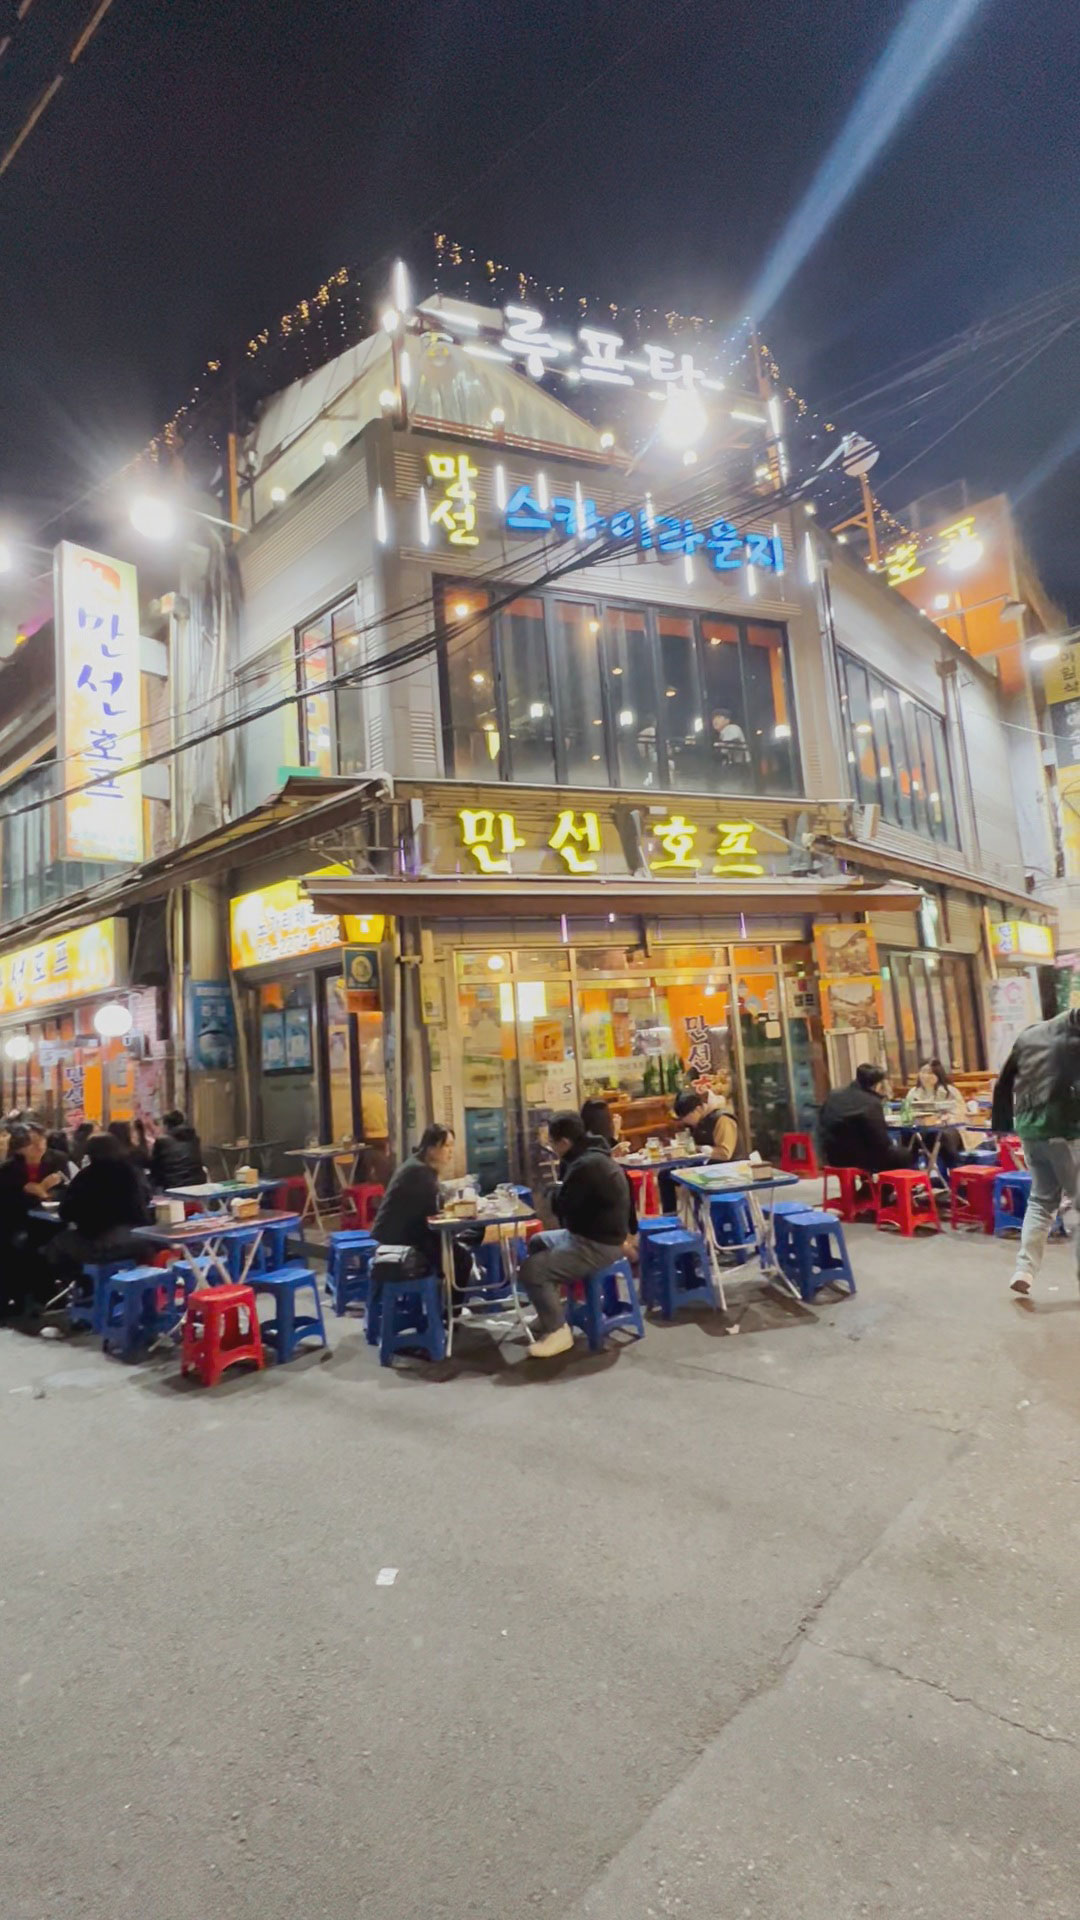 Must Eat Places in Seoul, Korea: Manseon Hof